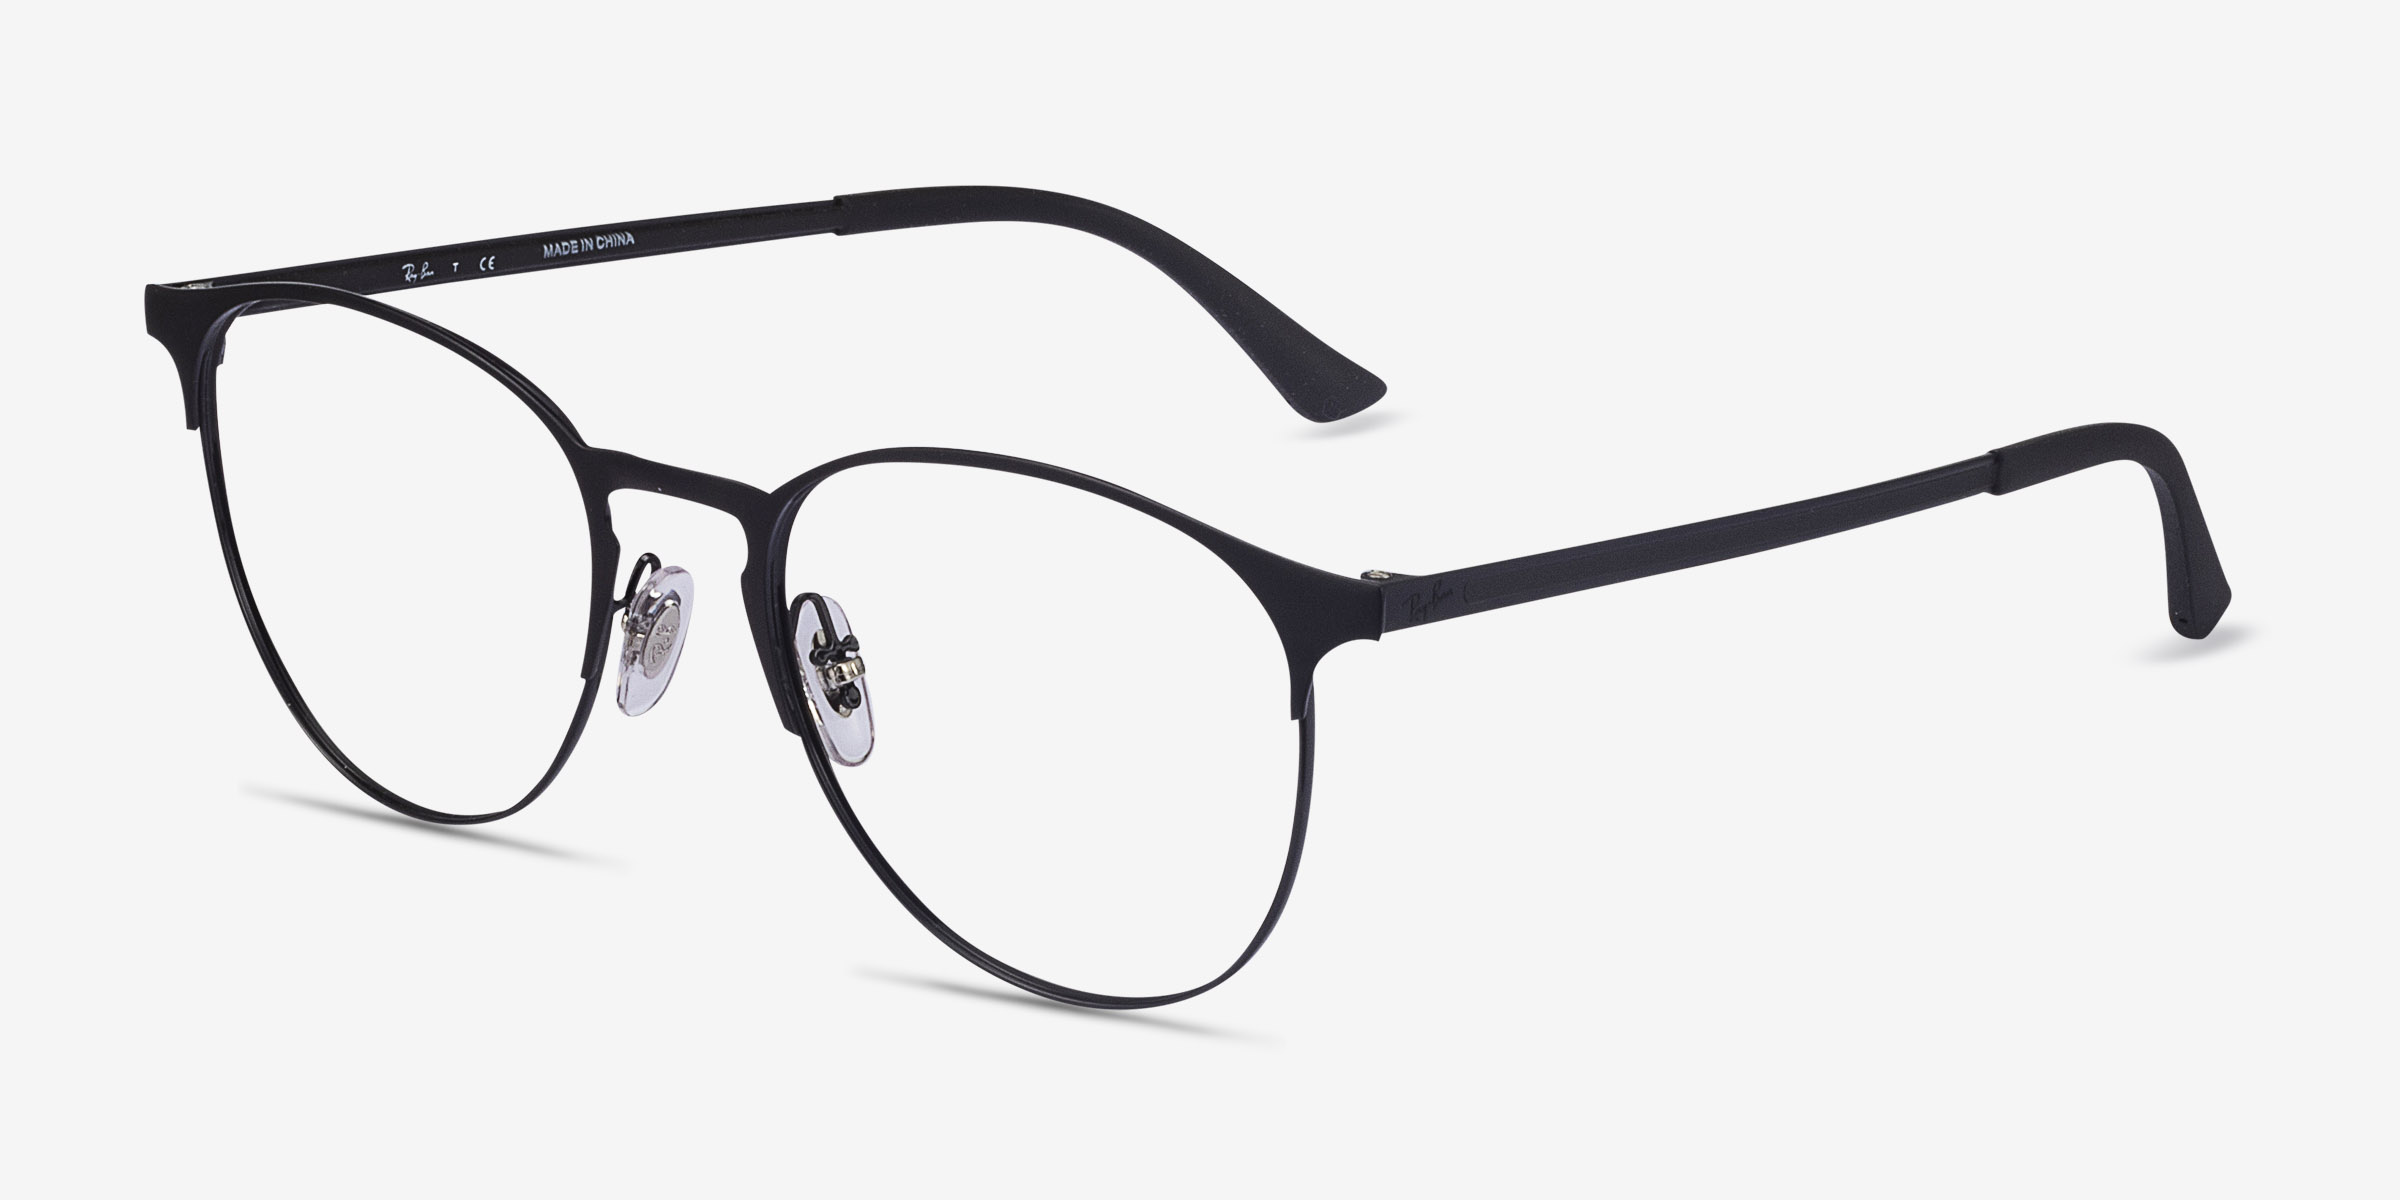 Ray-Ban RB6375 - Round Black Frame Eyeglasses | Eyebuydirect